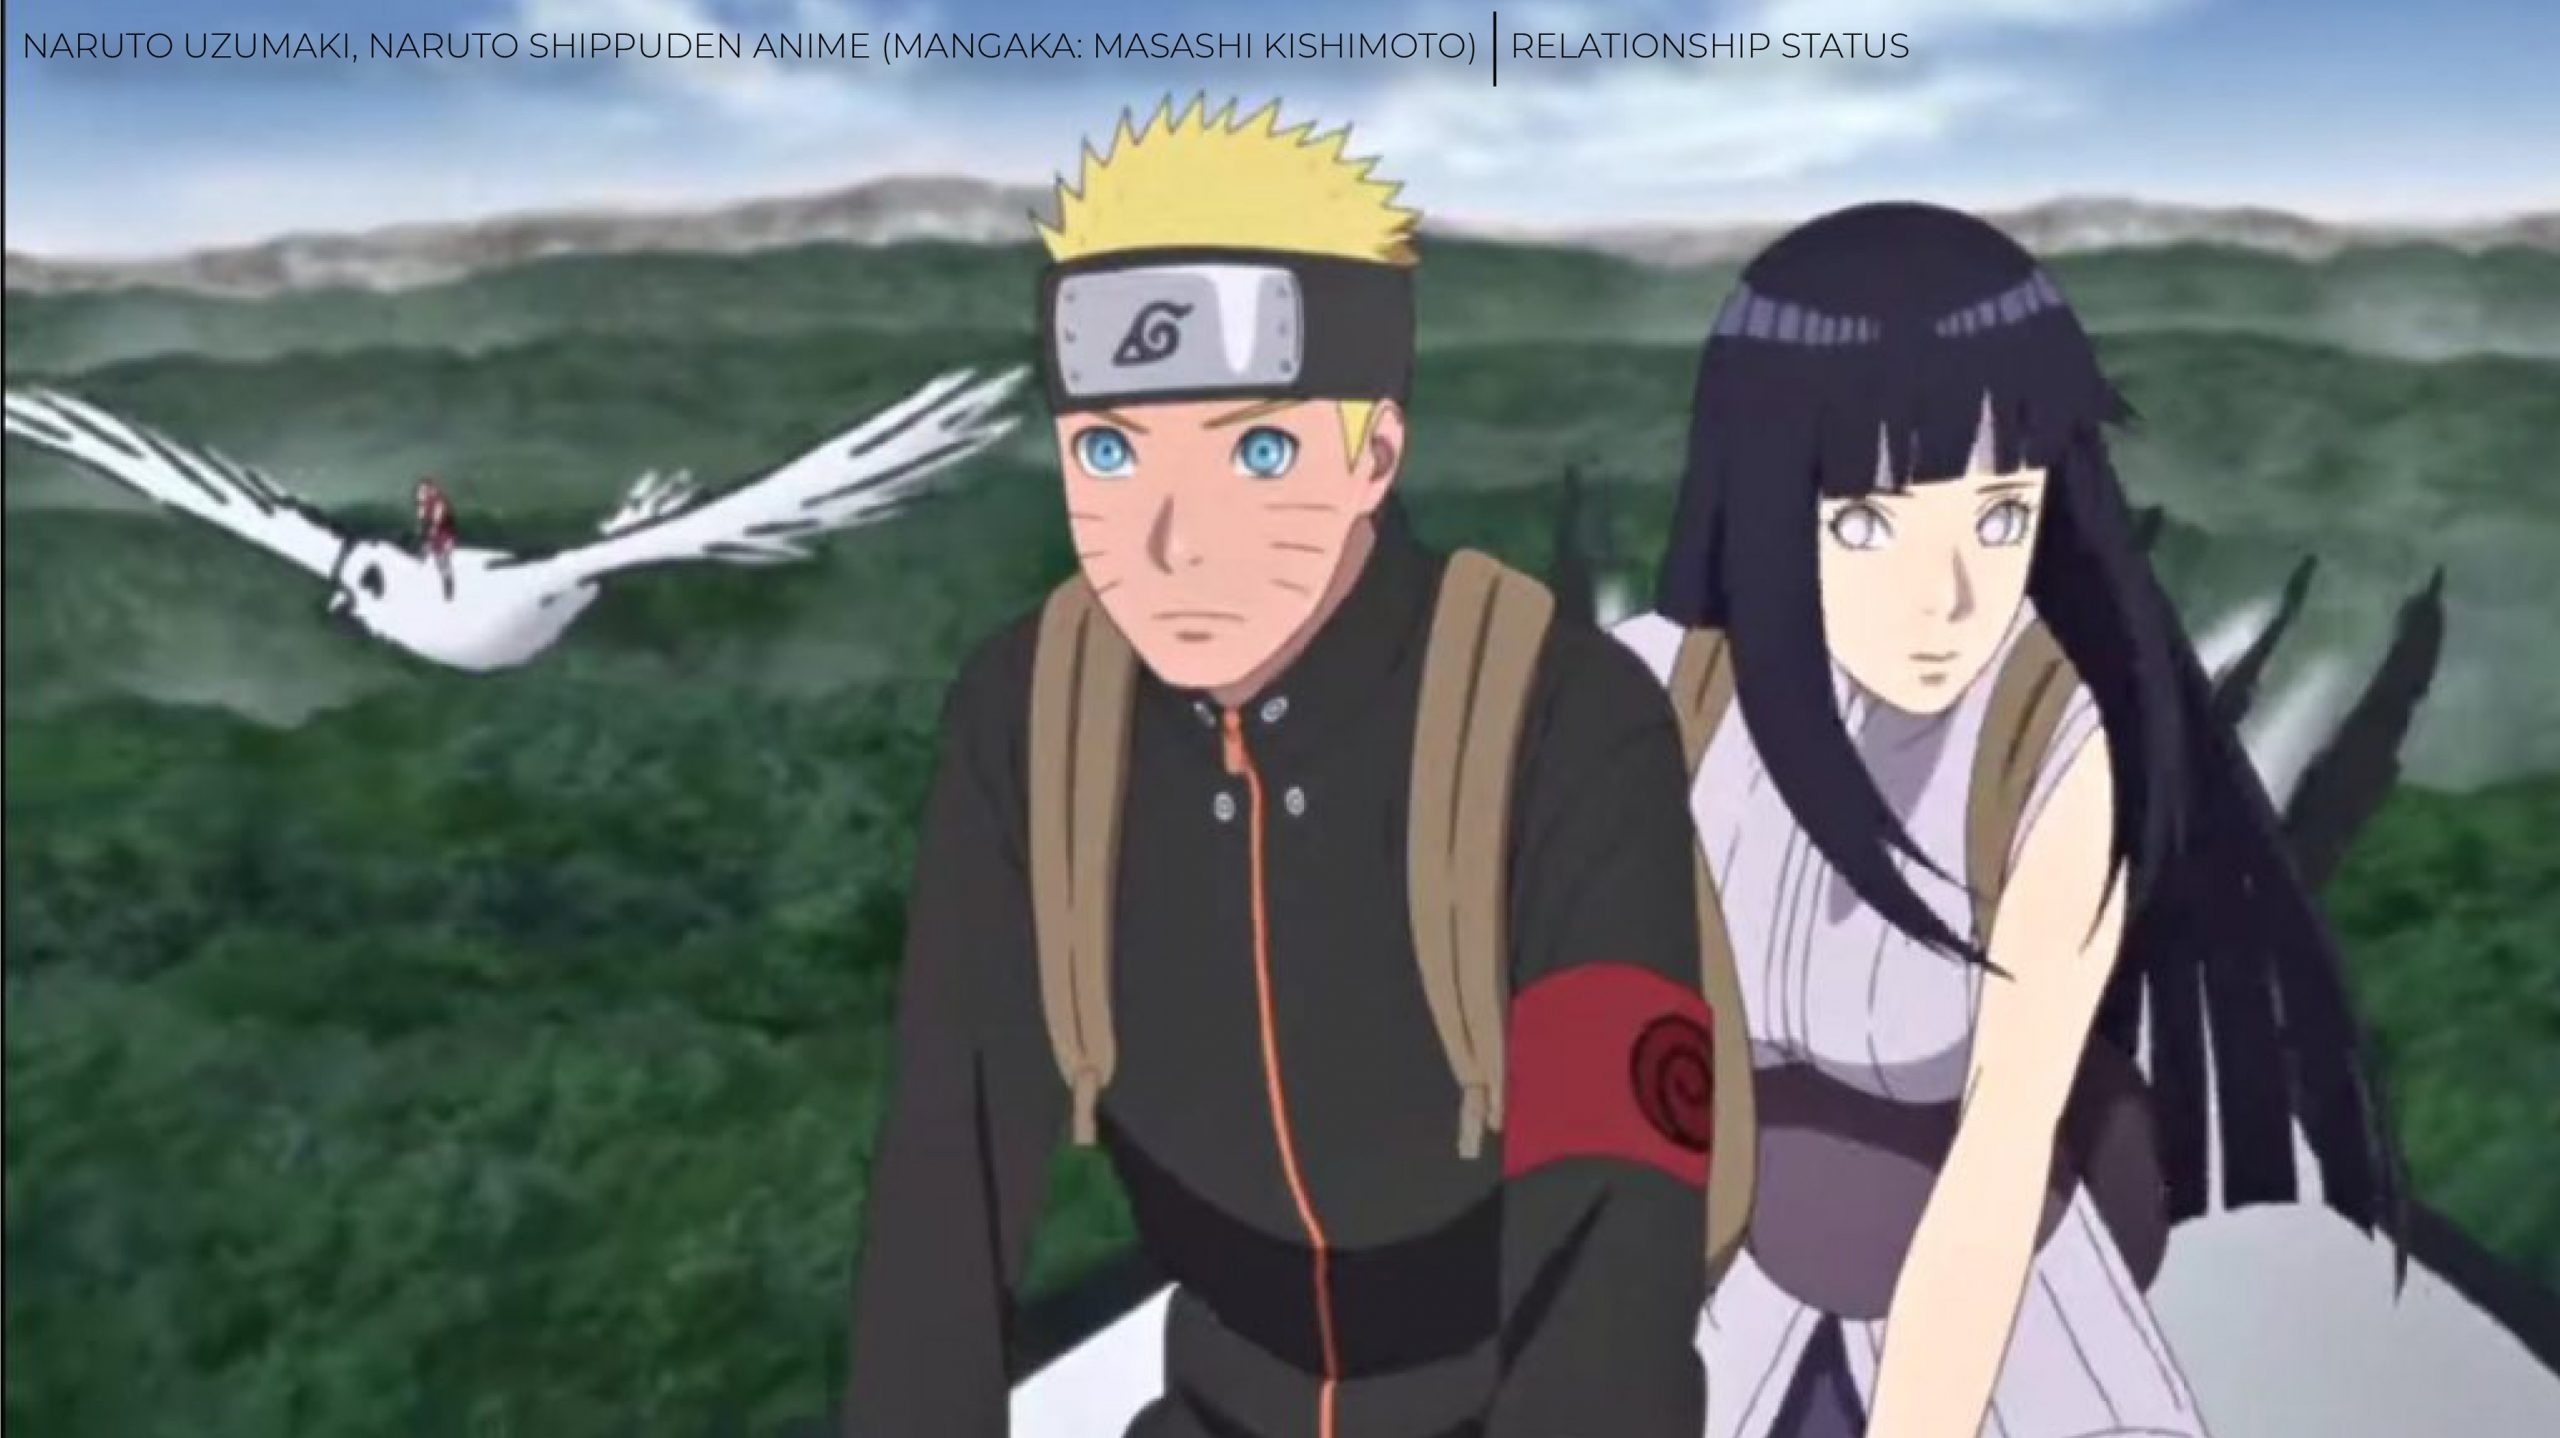 5 curiosidades que você provavelmente não sabia sobre o relacionamento de Naruto e Hinata